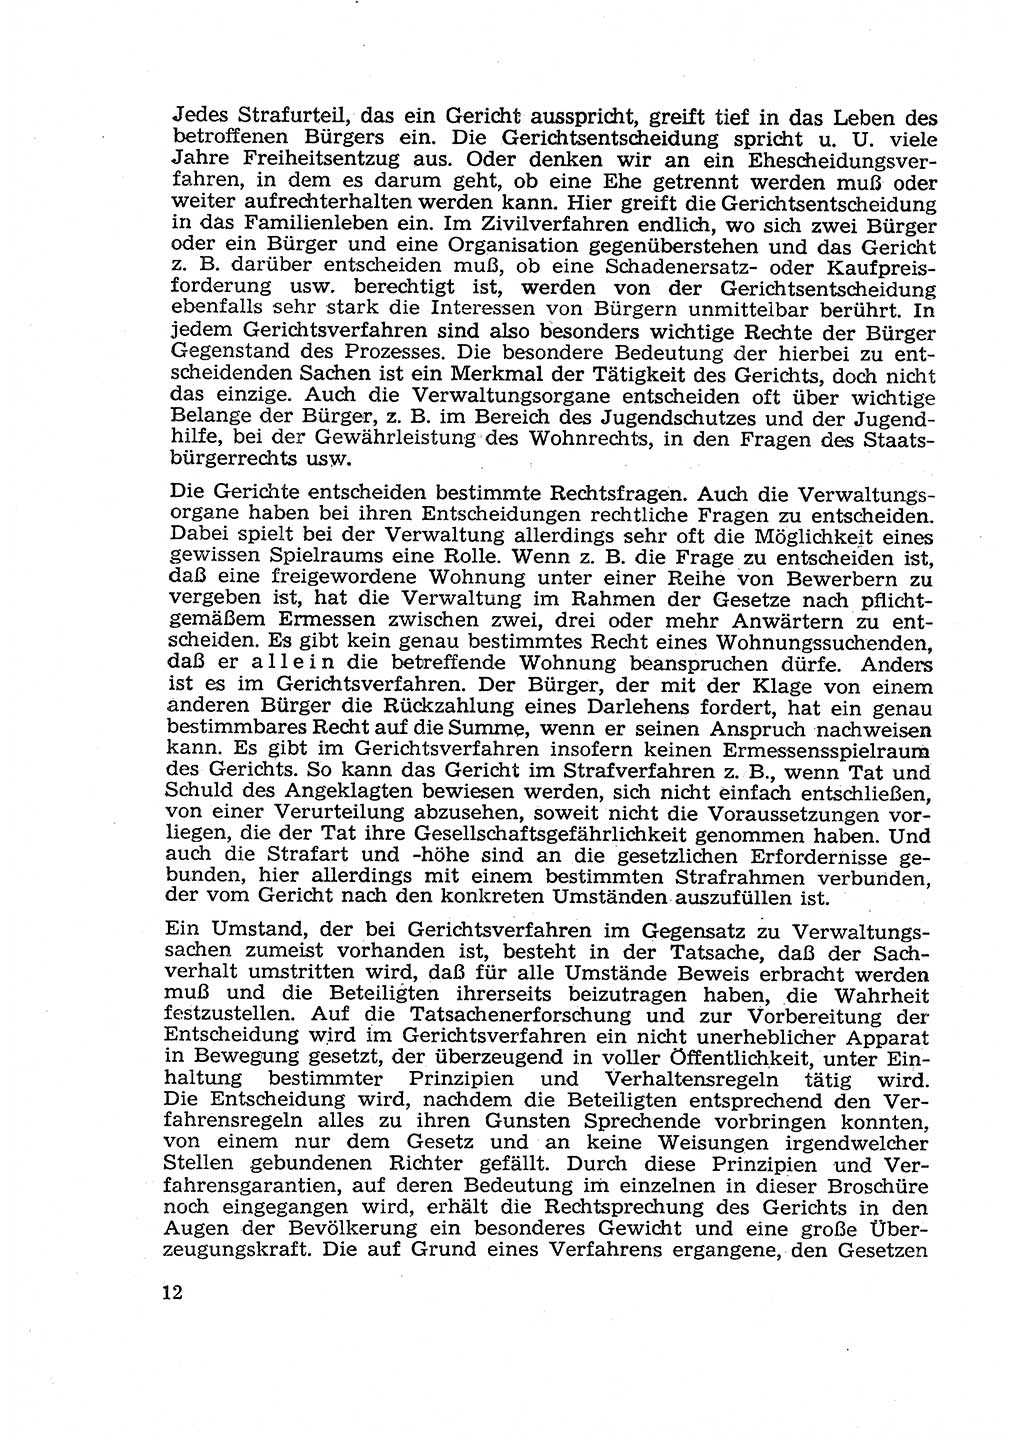 Gericht und Rechtsprechung in der Deutschen Demokratischen Republik (DDR) 1956, Seite 12 (Ger. Rechtspr. DDR 1956, S. 12)